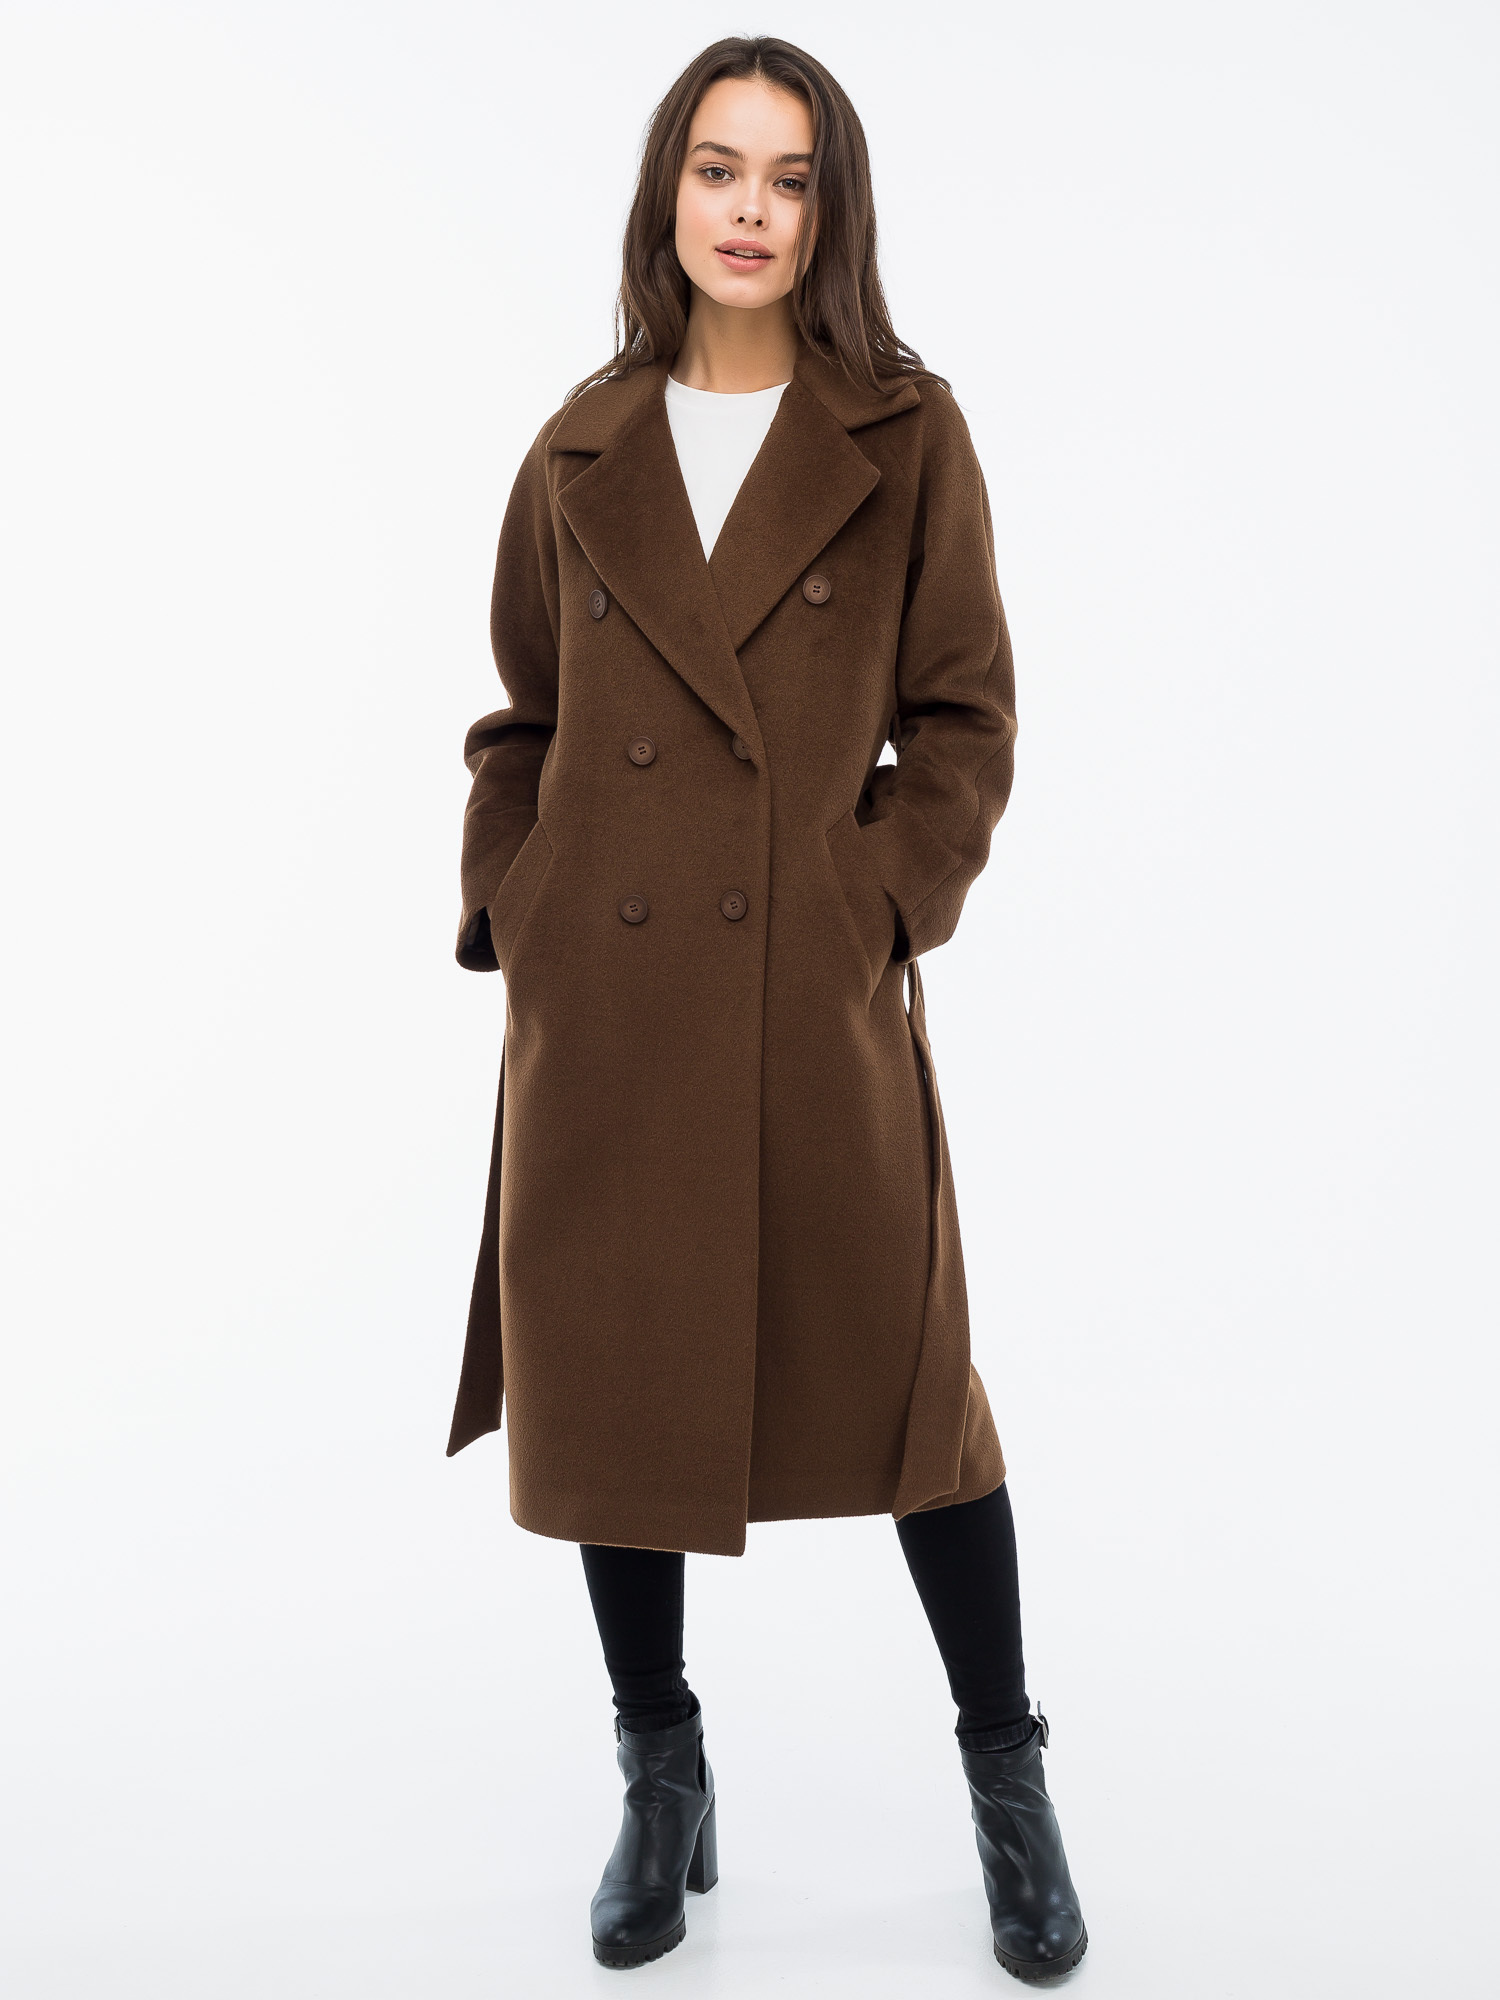 Купить коричневое пальто. Коричневое пальто. Коричневое пальто женское. Пальто темно коричневое женское. Пальто коричневого цвета.